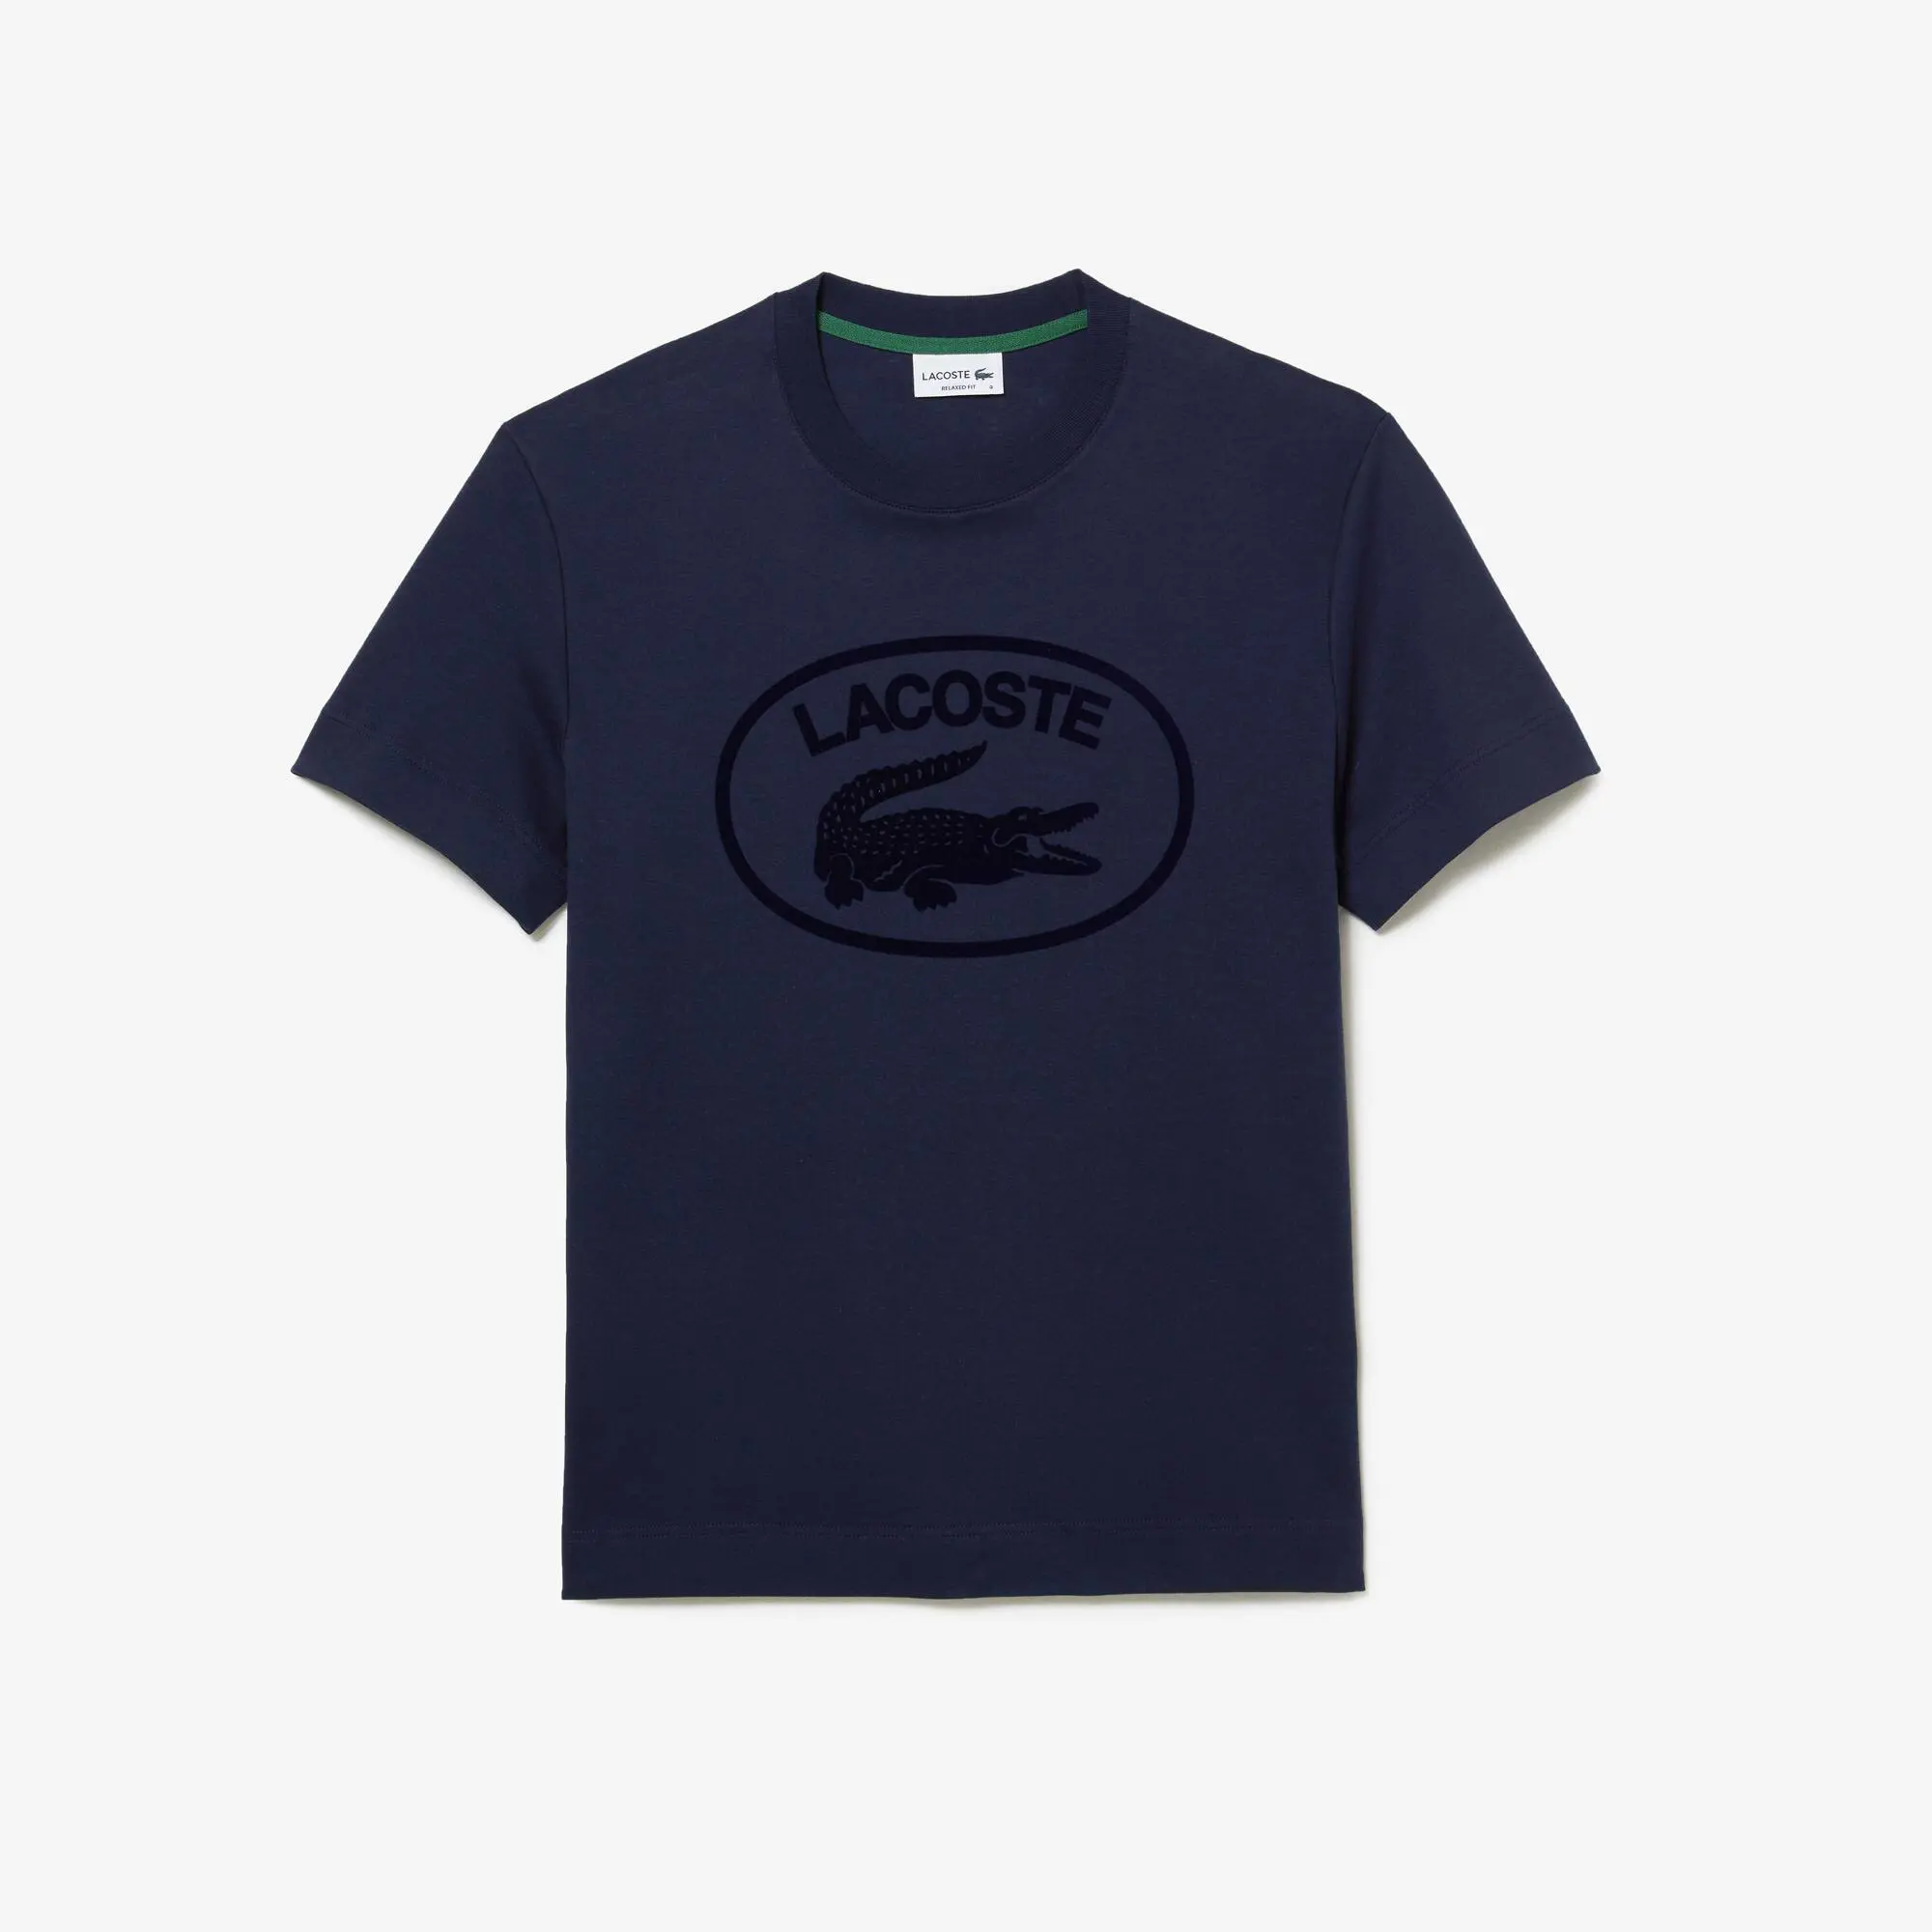 Lacoste T-shirt relaxed fit de algodão com marca no tom Lacoste para homem. 2